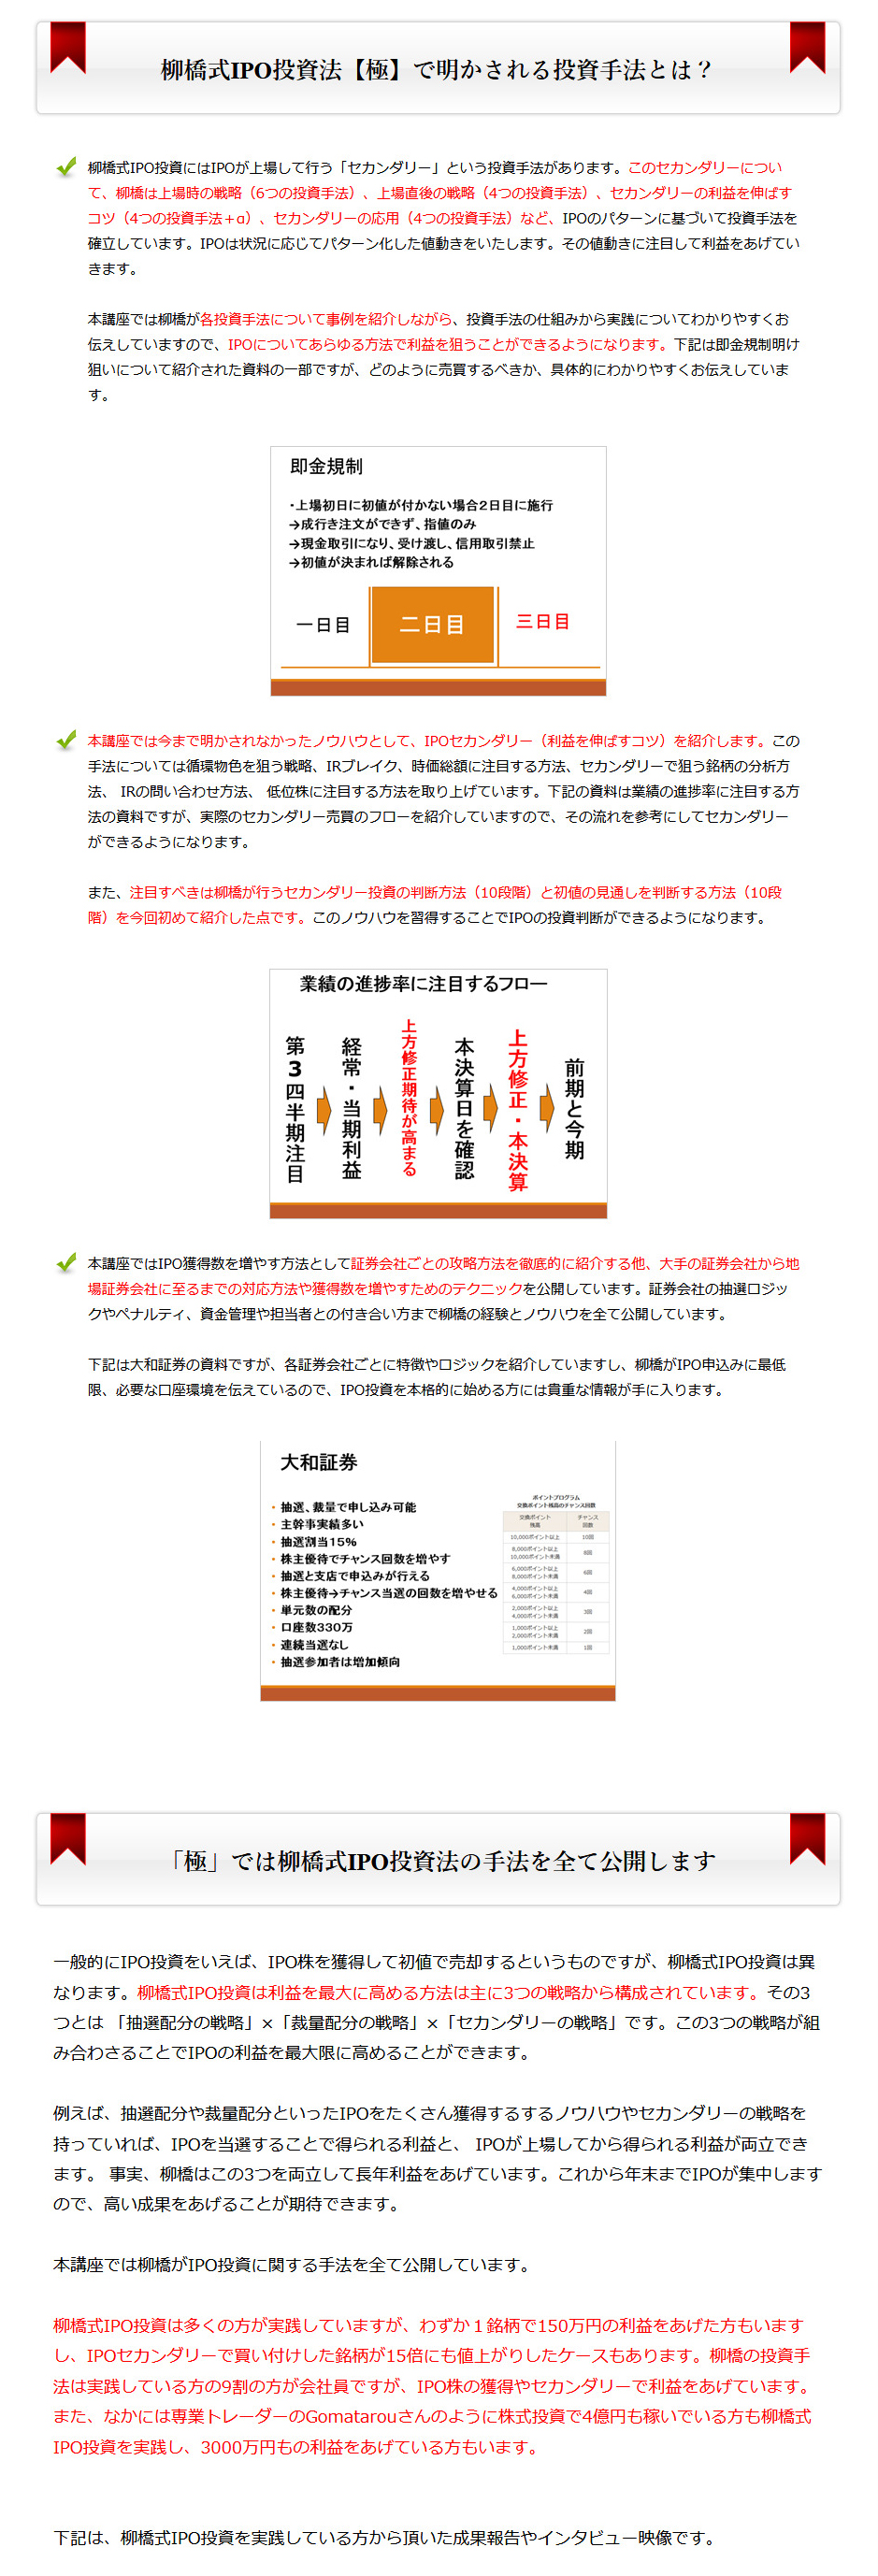 わずか数日から数週間で、数十万円～数百万円の利益をあげる「柳橋式IPO投資」_05